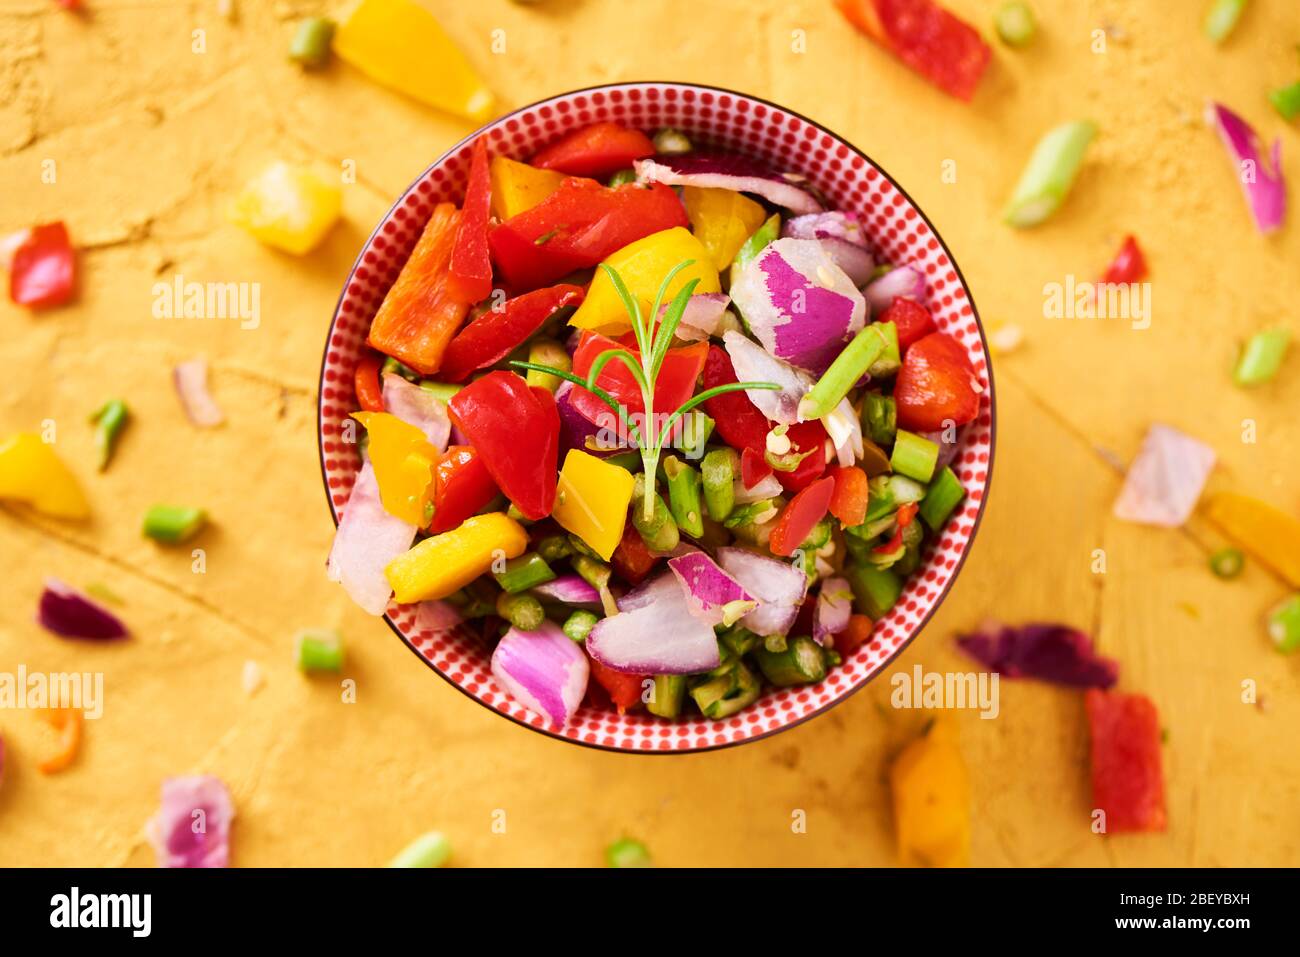 vue en grand angle d'un bol avec un mélange de différents légumes crus hachés, tels que l'asperge, l'oignon ou le poivron jaune et rouge, sur une texture dorée Banque D'Images